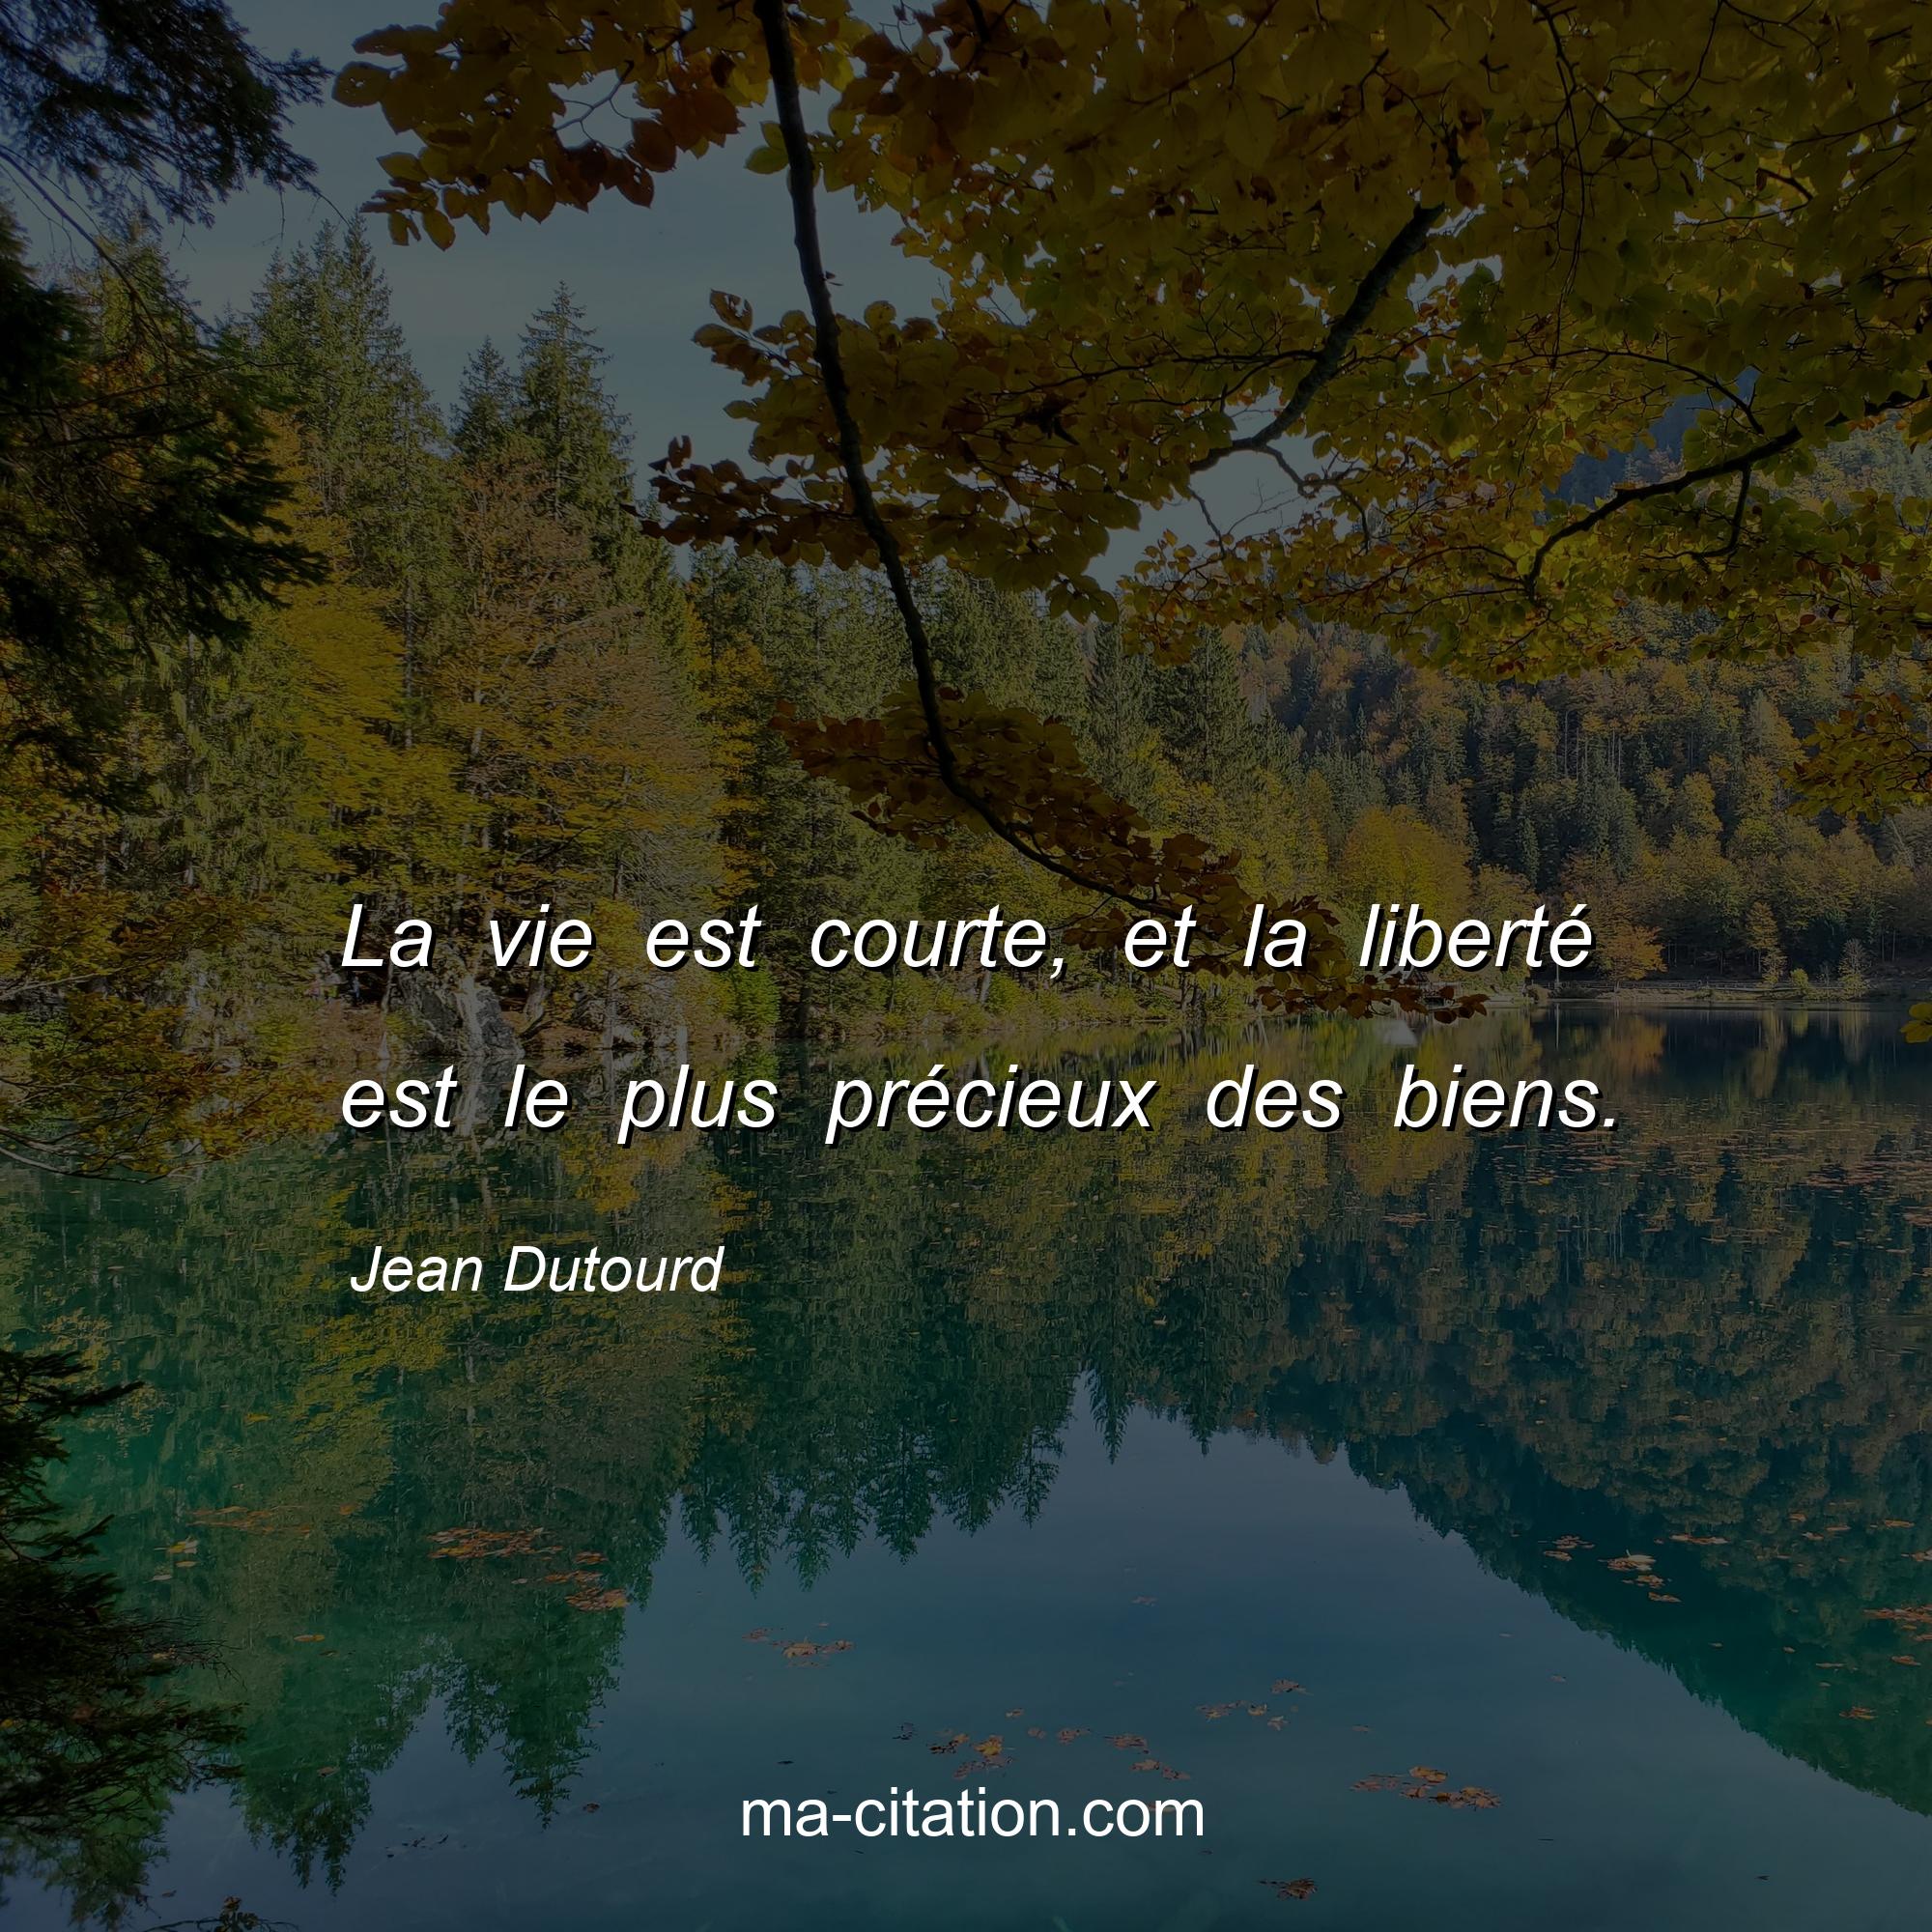 Jean Dutourd : La vie est courte, et la liberté est le plus précieux des biens.